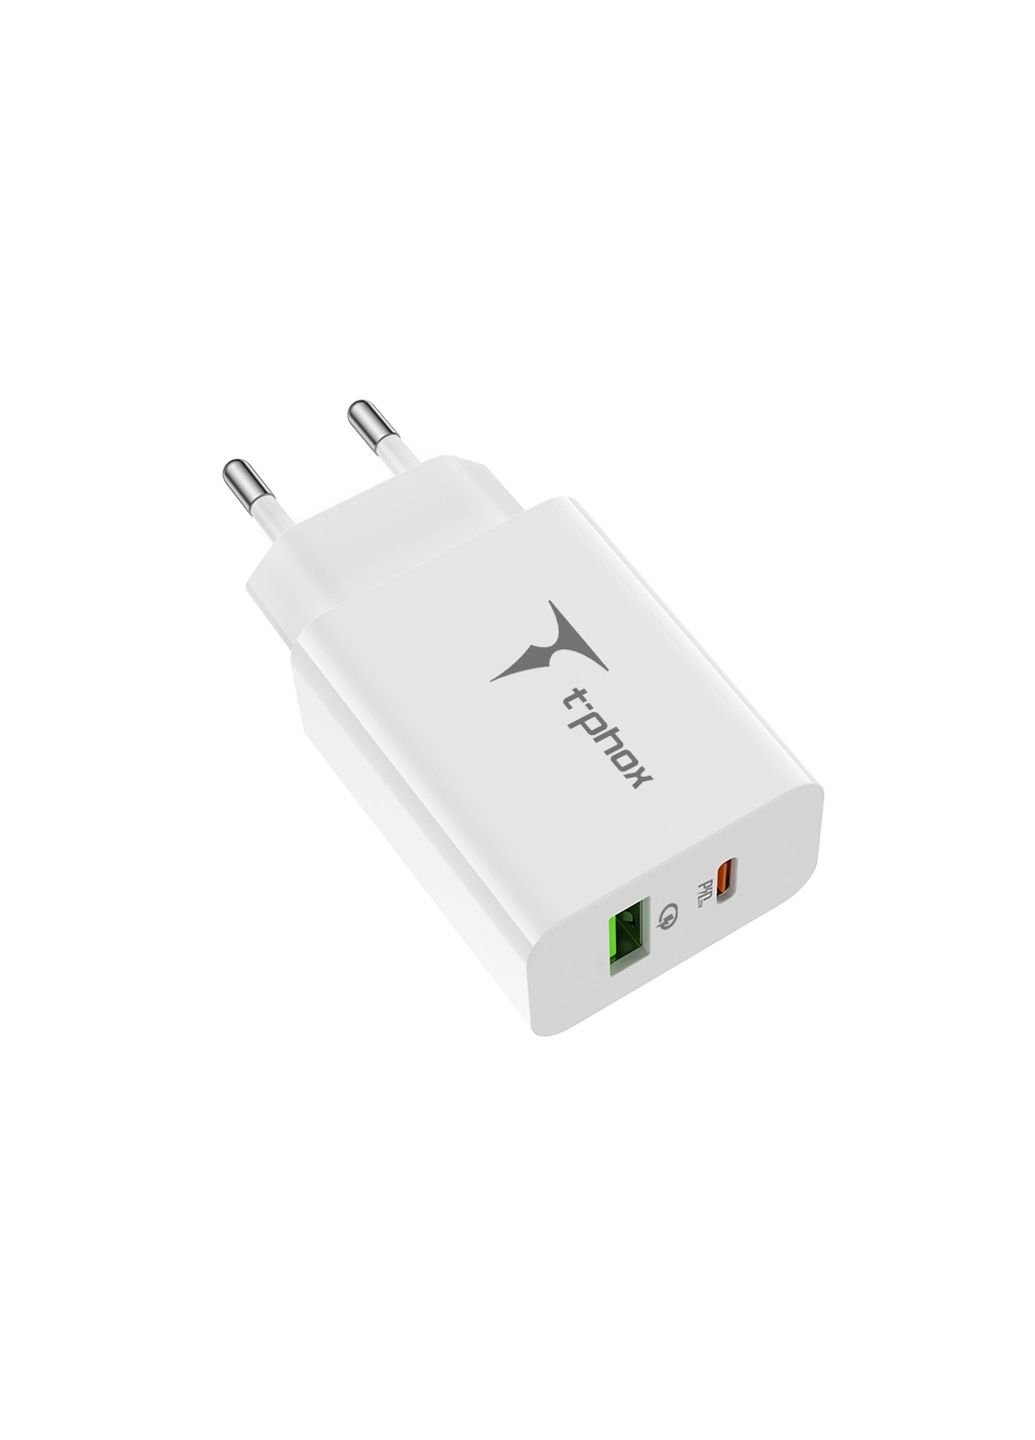 Зарядний пристрій (Speedy 20W PD+USB) T-PHOX speedy 20w 2ports type-c+usb charger (white) (253507386)